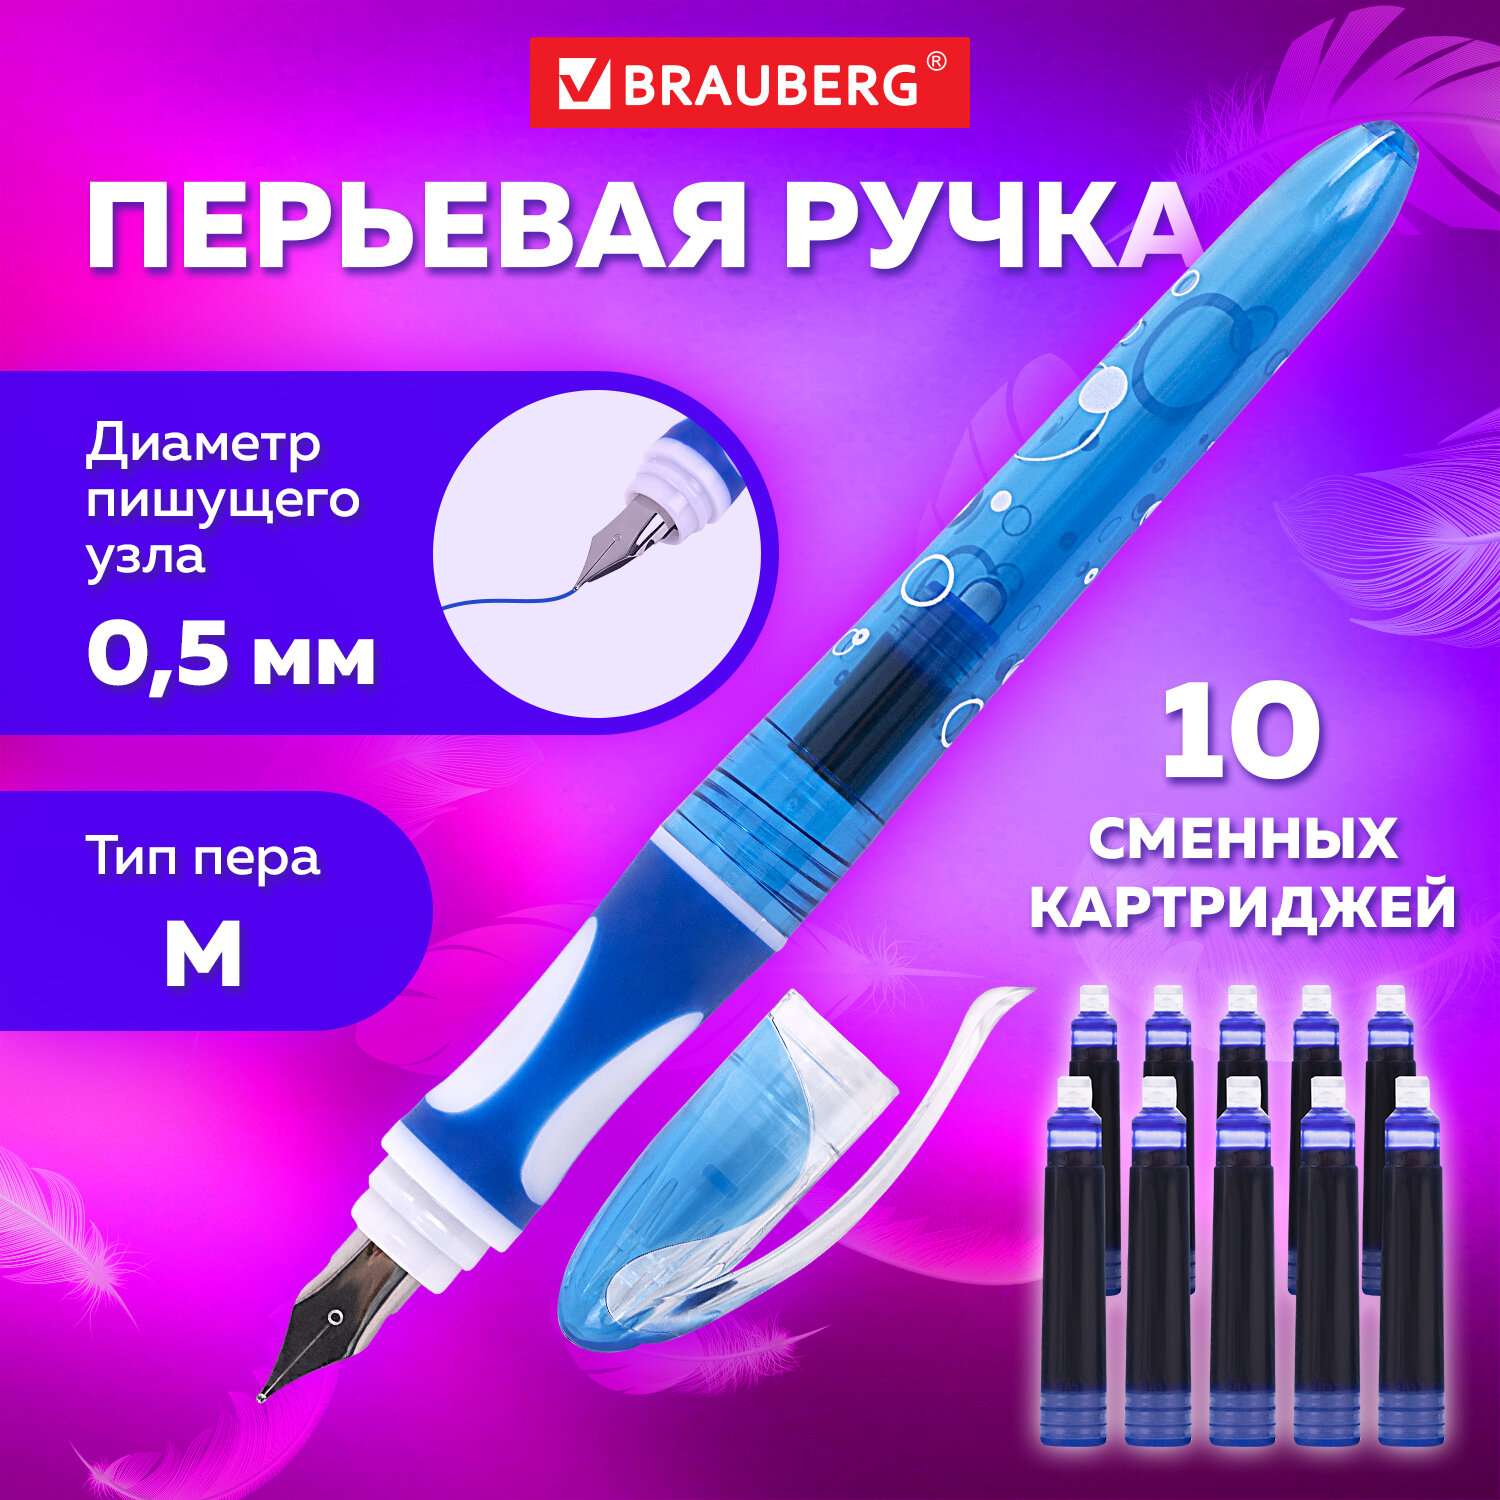 Перьевая ручка Brauberg с 10 сменными картриджами набор для каллиграфии - фото 1